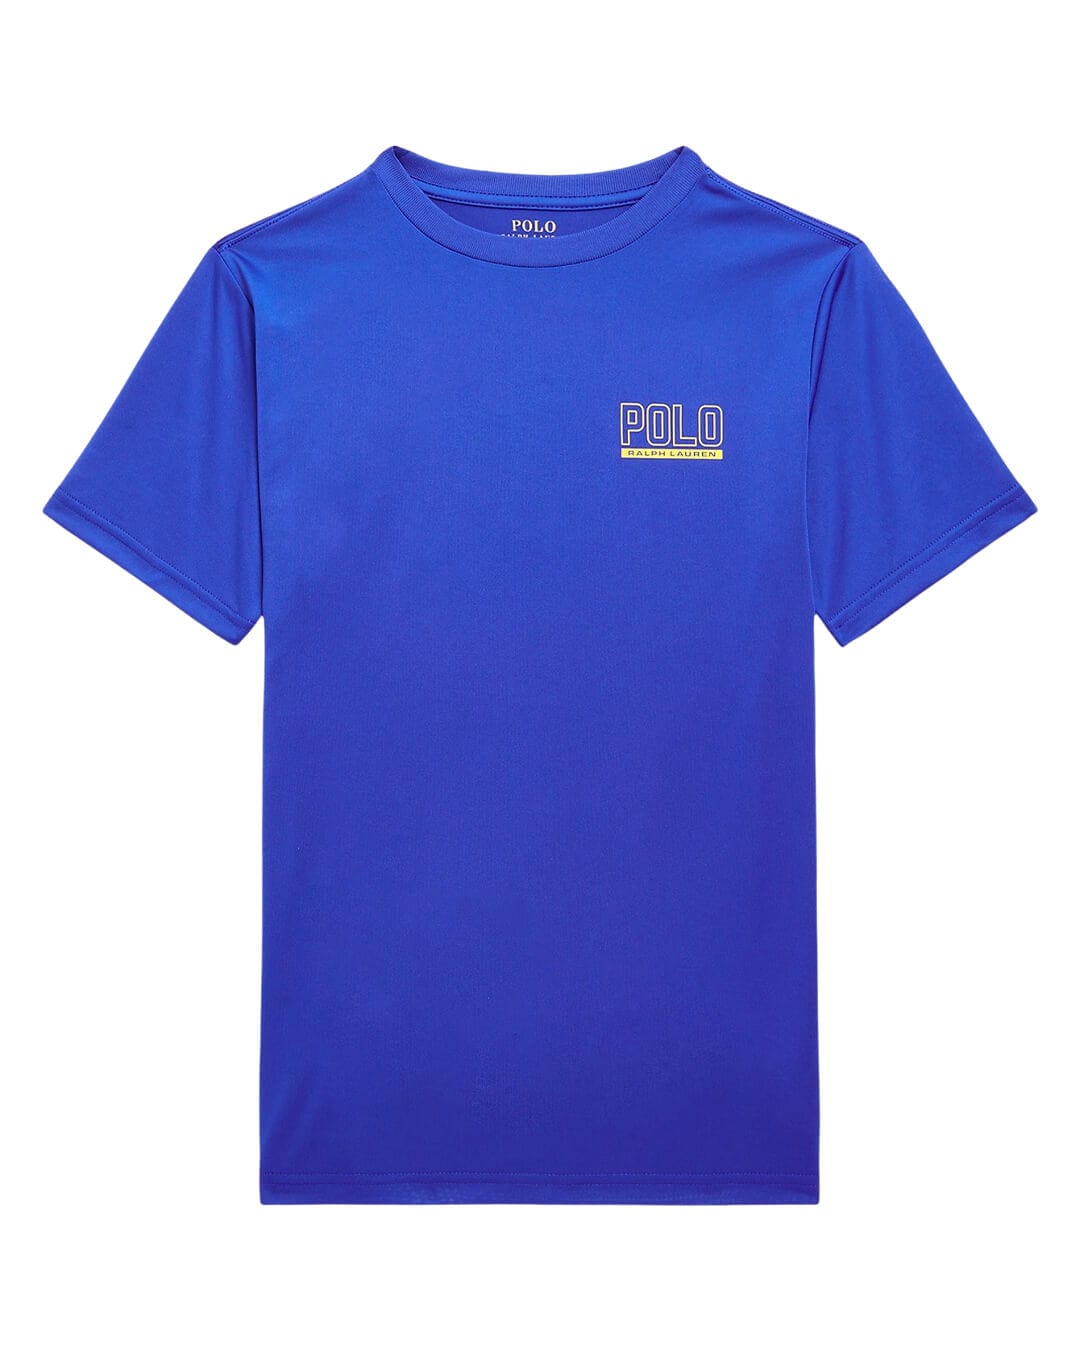 Polo Ralph Lauren T-Shirts Boys Polo Ralph Lauren Logo Performance Blue Jersey Tee